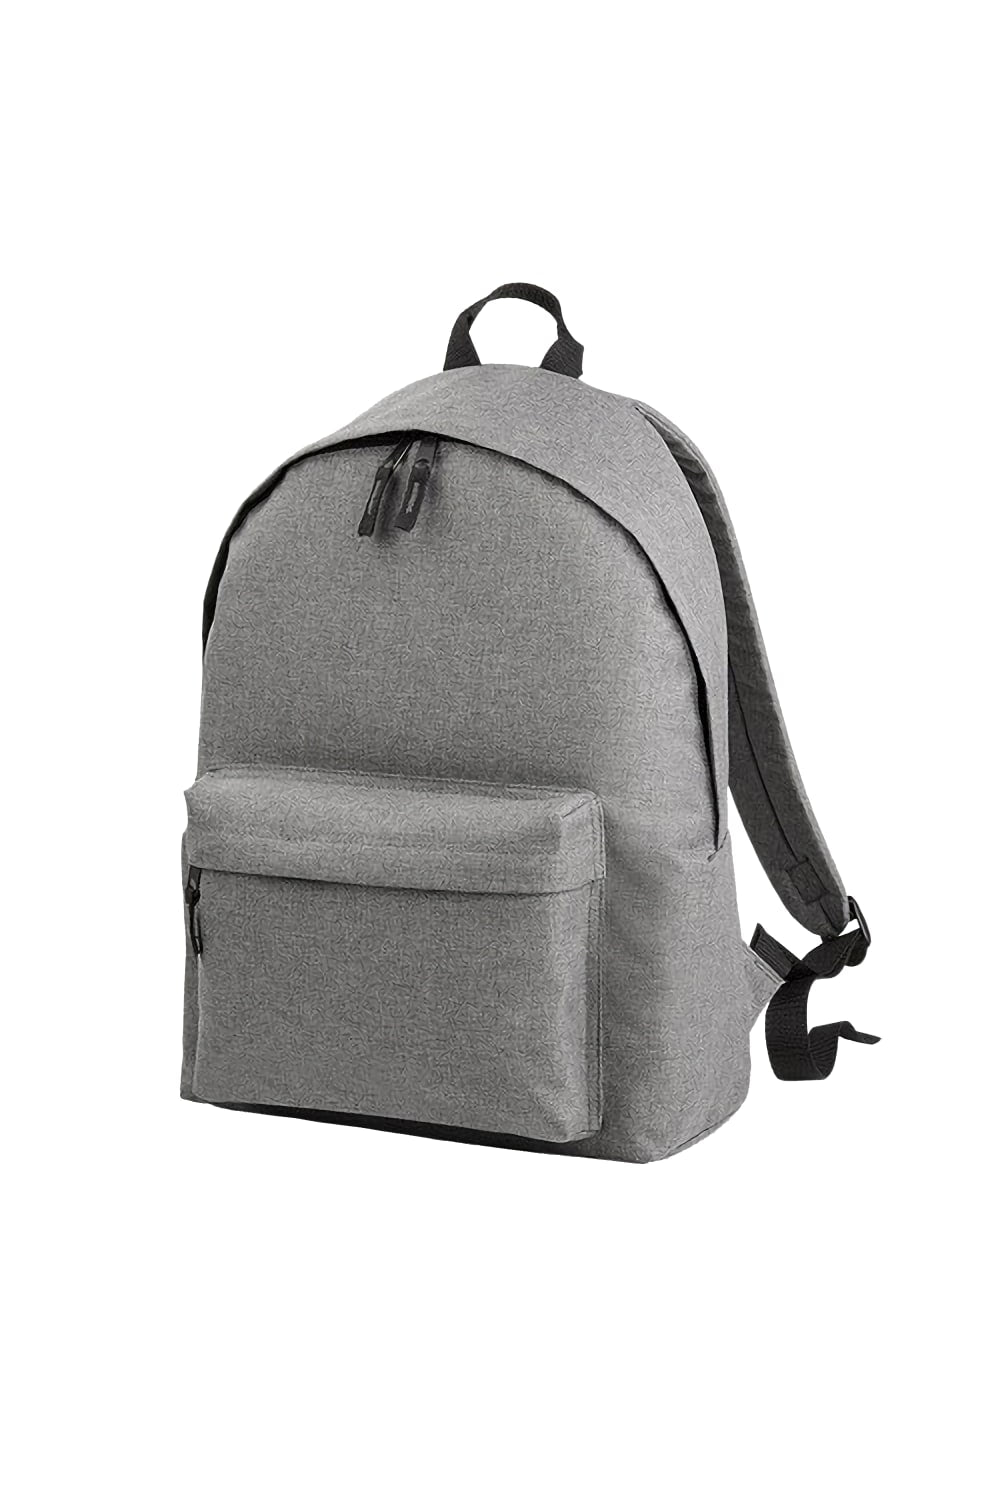 Two Tone Fashion Backpack/Rucksack/Bag - Grey Marl